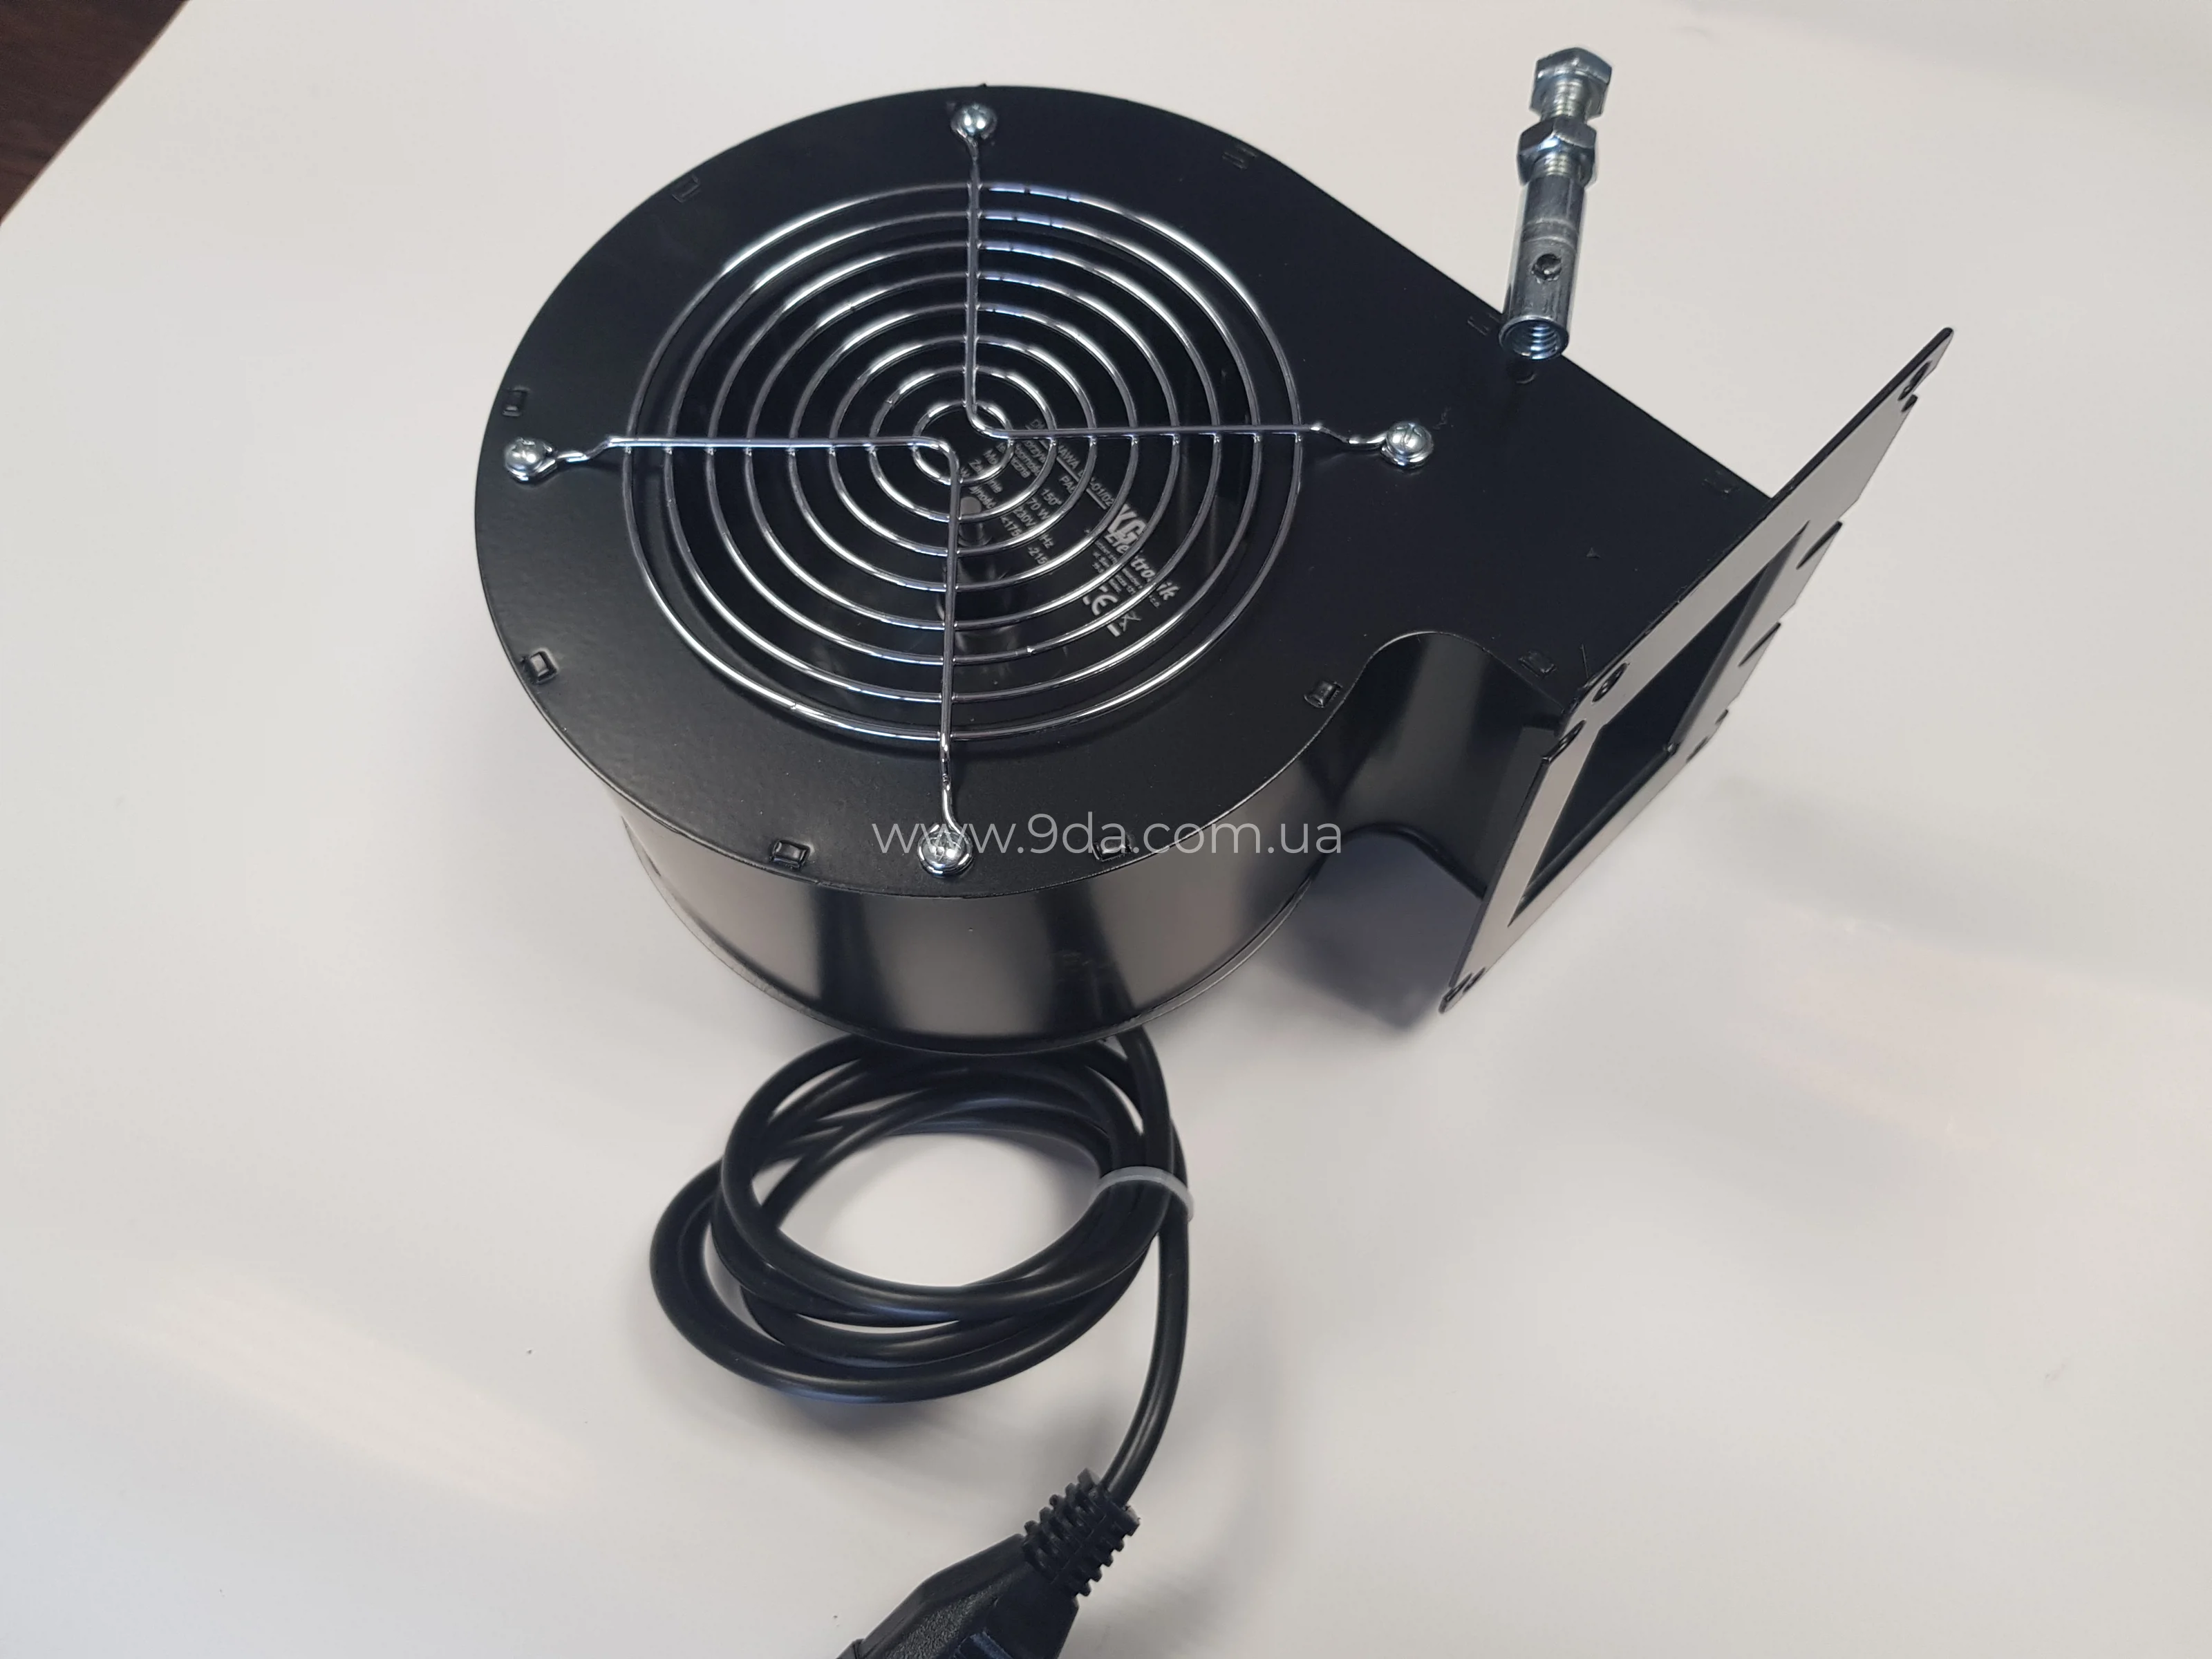 Вентилятор для котла DPS-02, KG Elektronik - 1